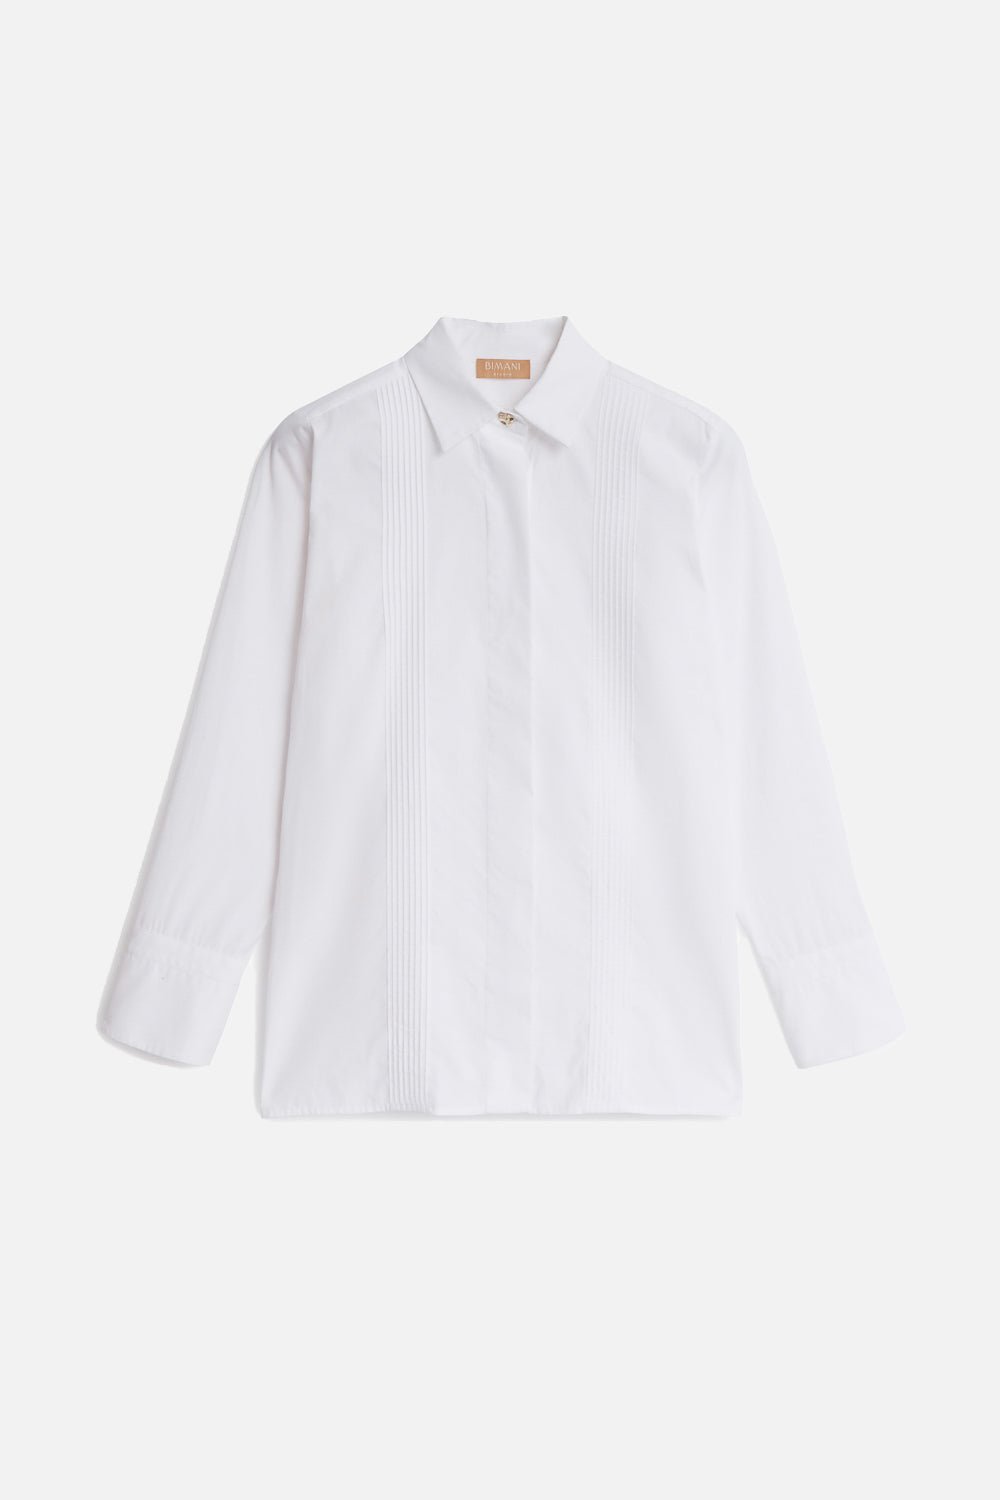 Camisa DUCAL White - BIMANI